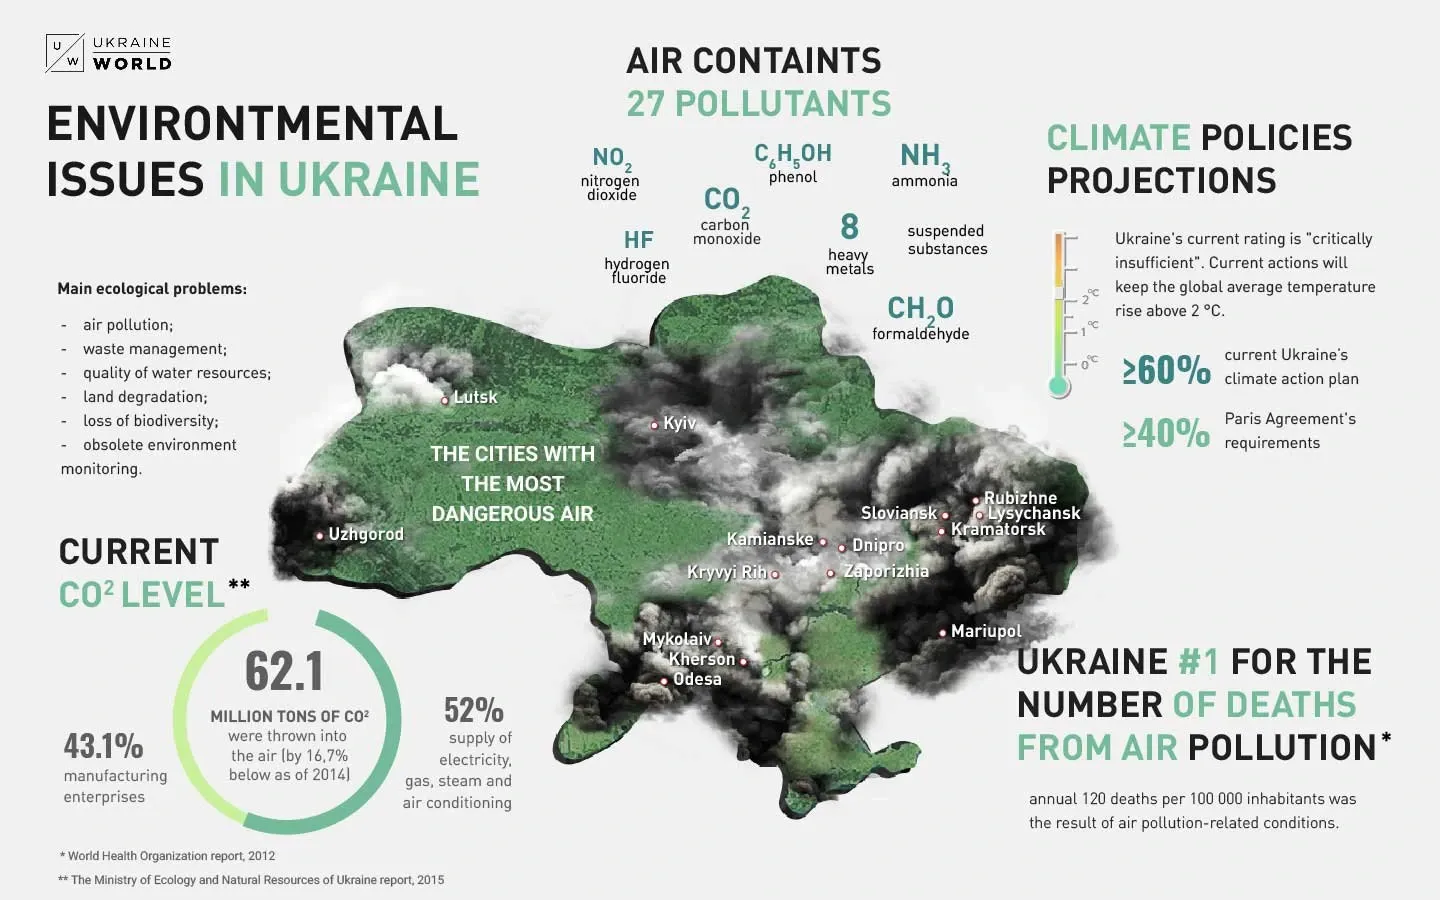 Problemy środowiskowe na Ukrainie, źródło: ukraineworld.org